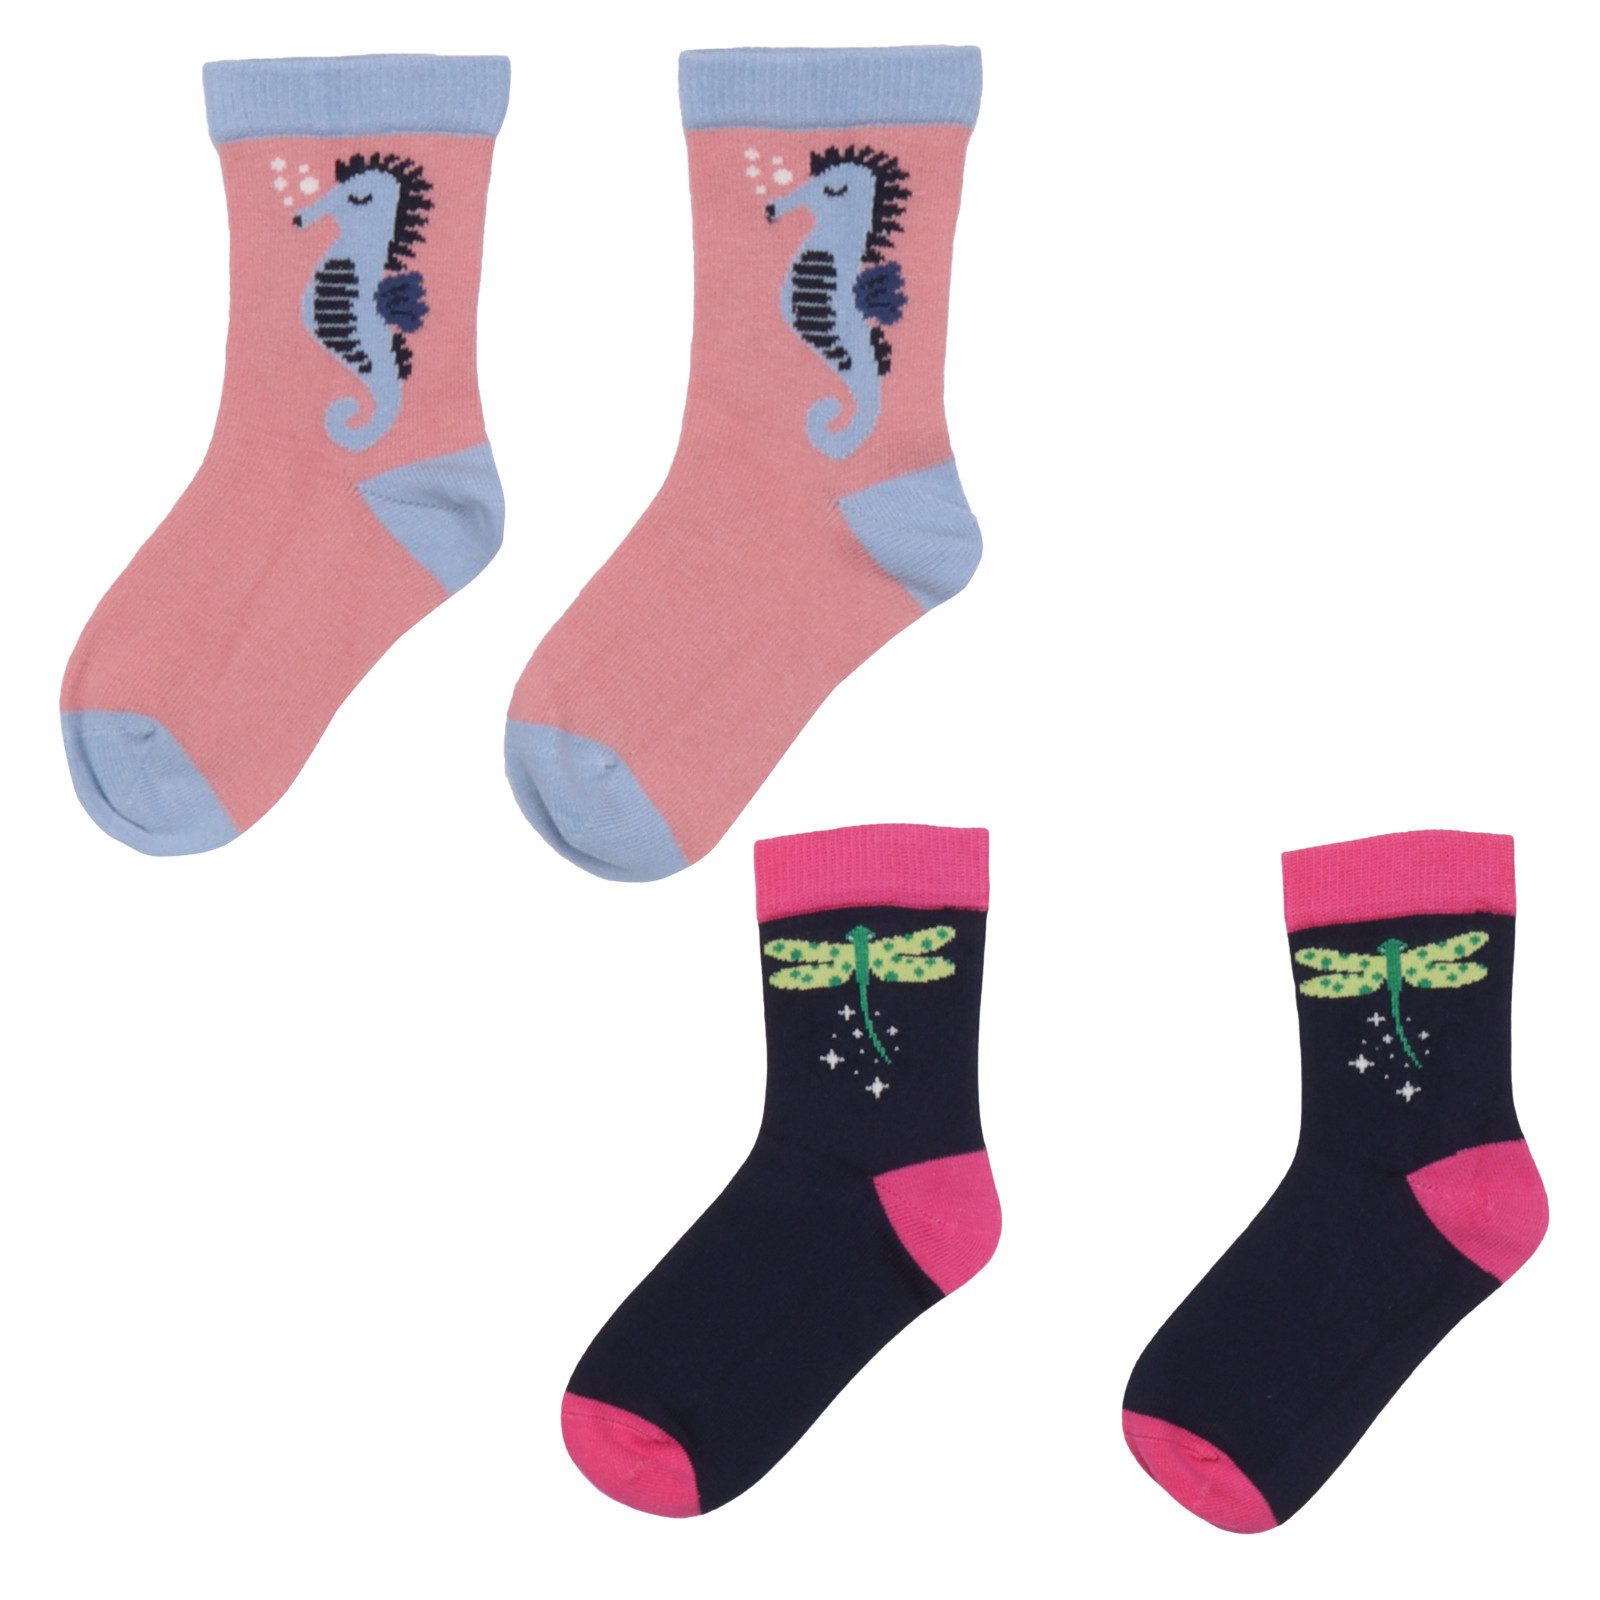 Walkiddy Laufsocken Walkiddy Doppelpack Socken Seepferdchen Libellen 31-33